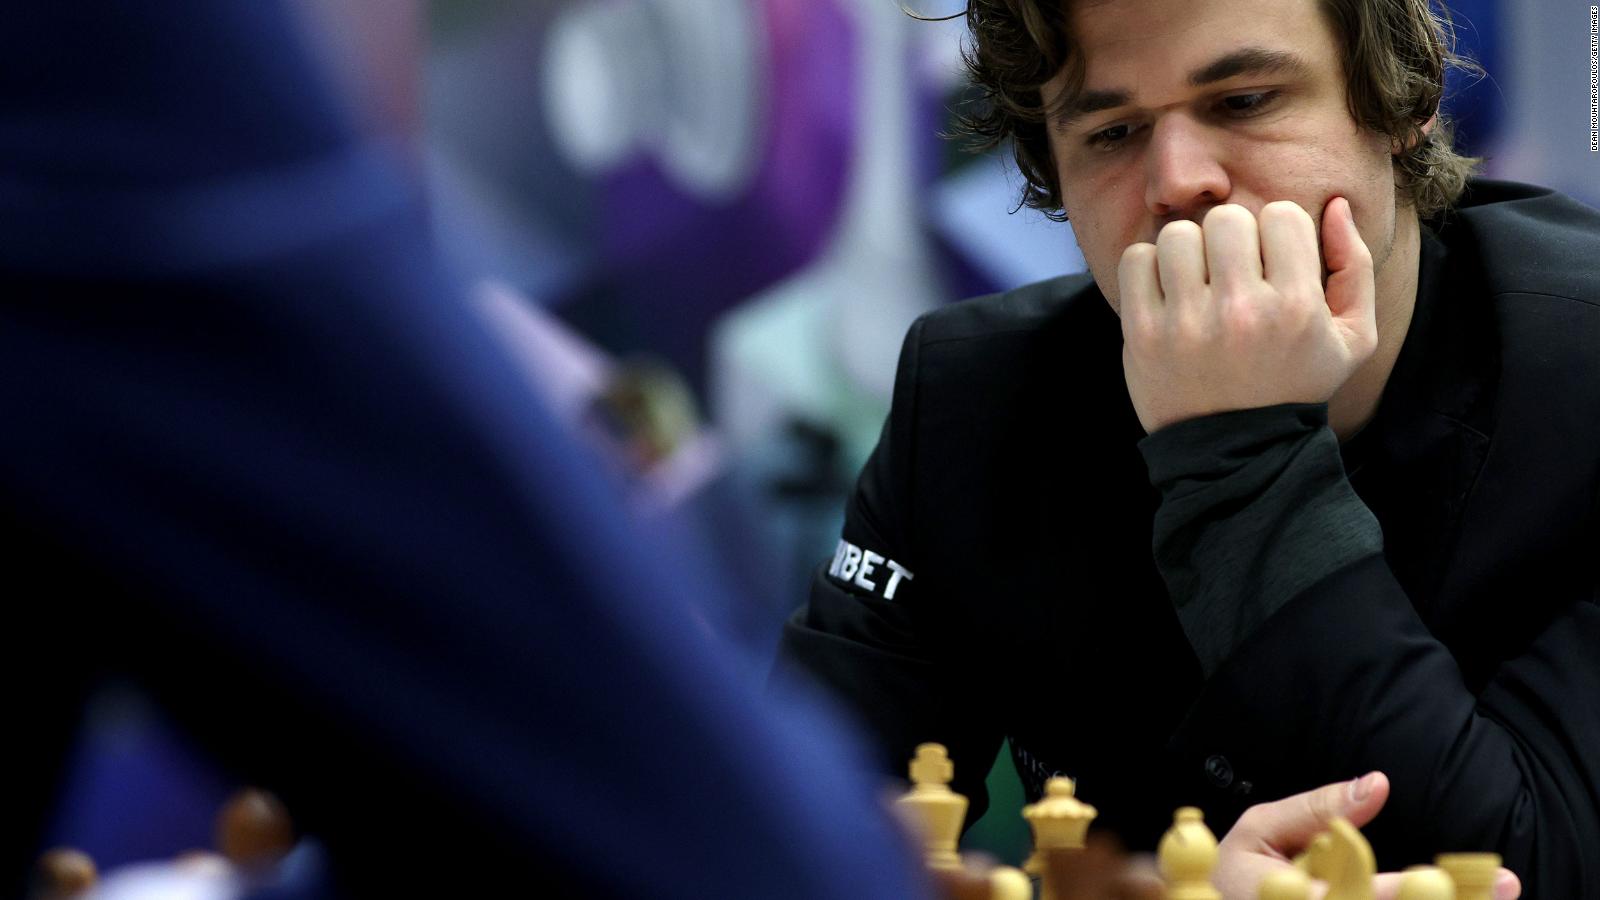 ¿Aburrido de ganar? Magnus Carlsen da su razón para no competir por
el título mundial de ajedrez